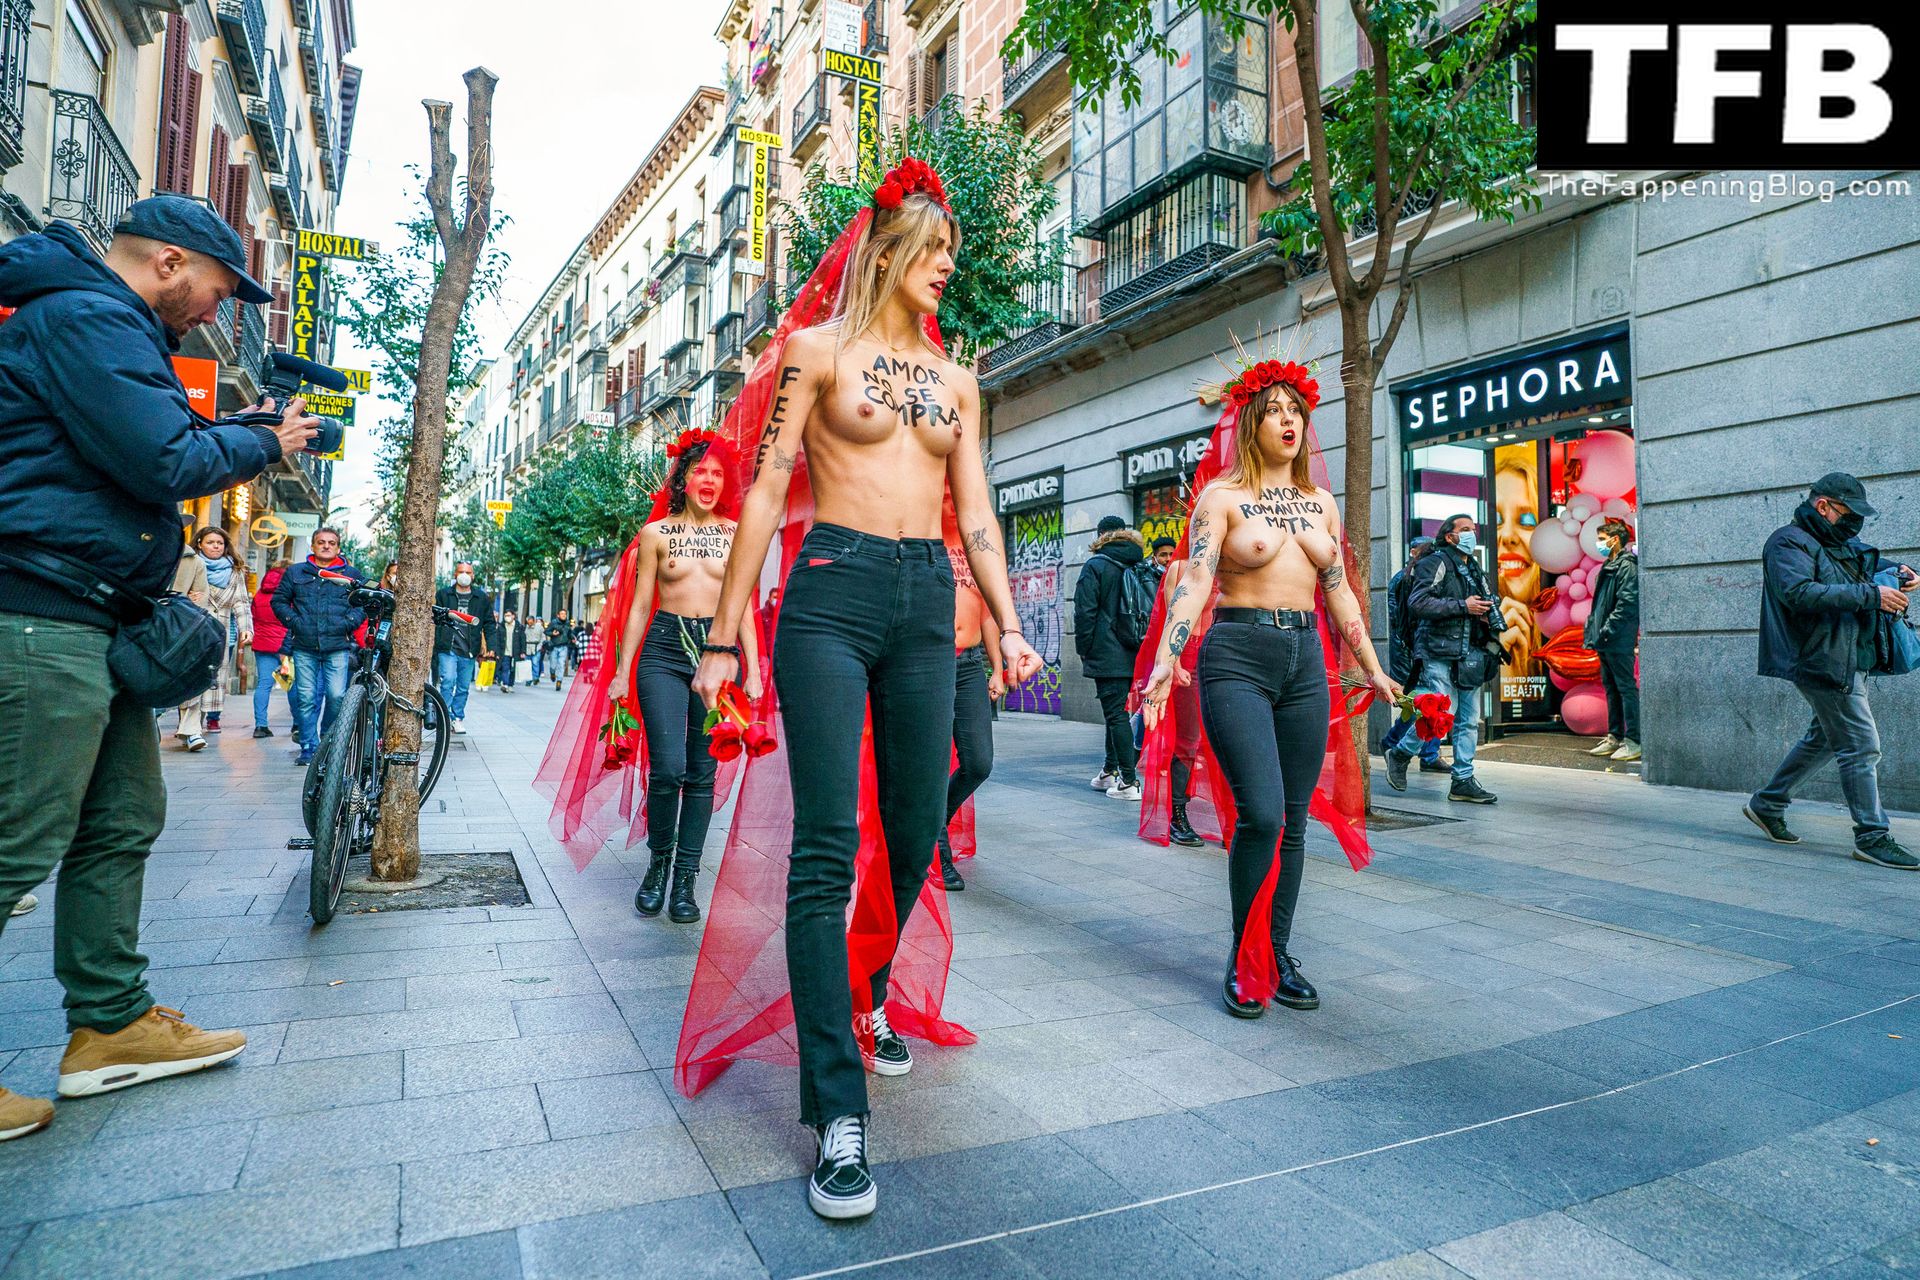 FEMEN-Topless-Girls-The-Fappening-Blog-11.jpg